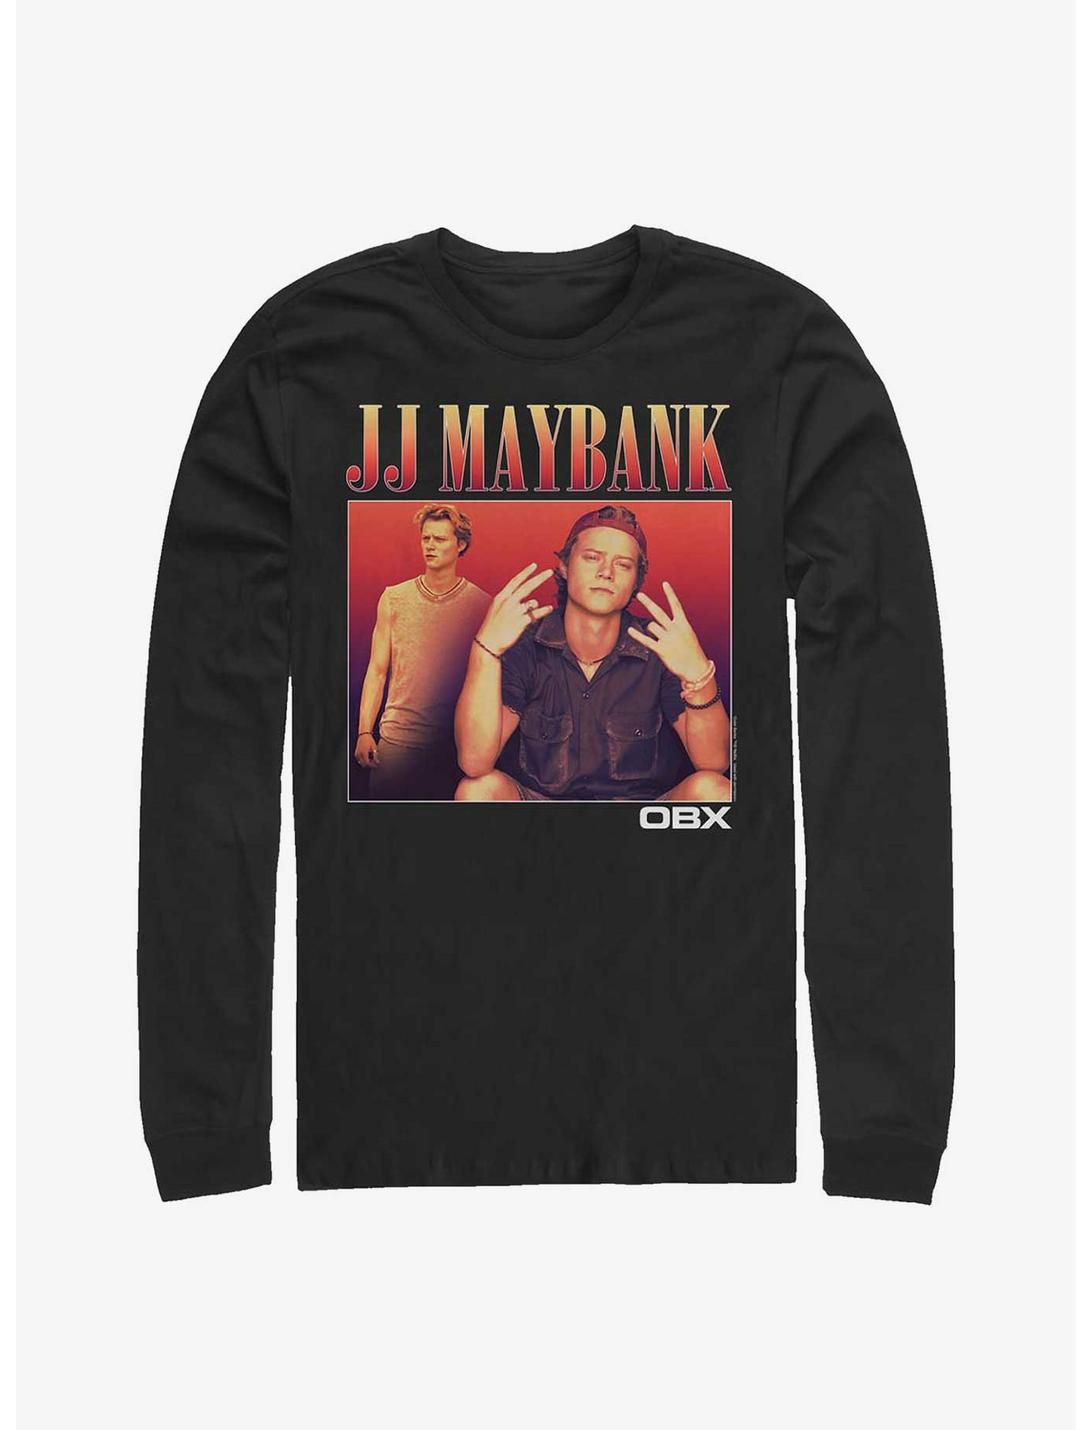 Outer Banks JJ Maybank OBX Long-Sleeve T-Shirt, BLACK, hi-res